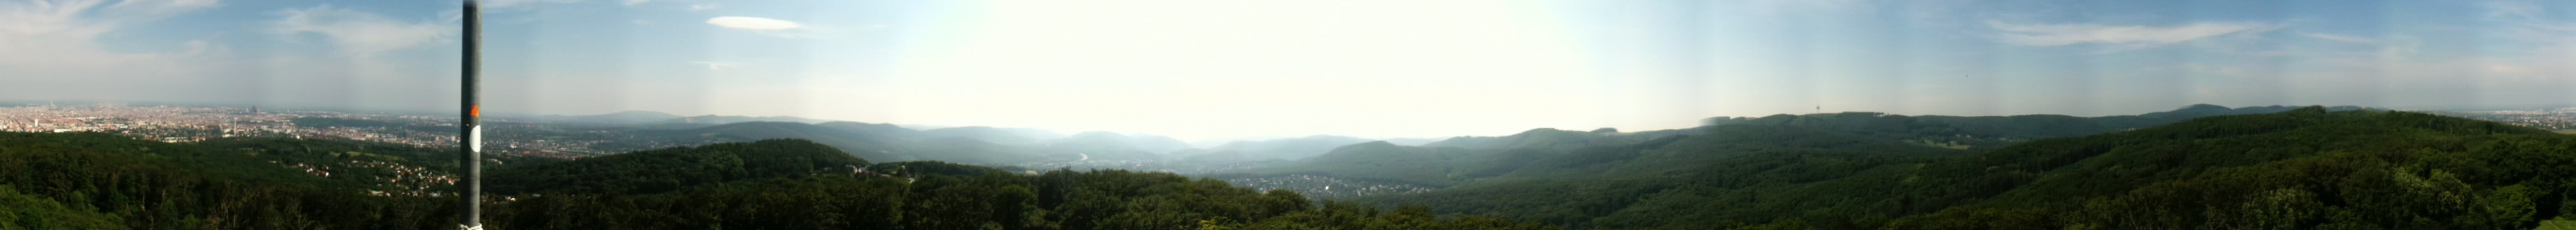 Panoramaansicht von der Jubiläumswarte aus